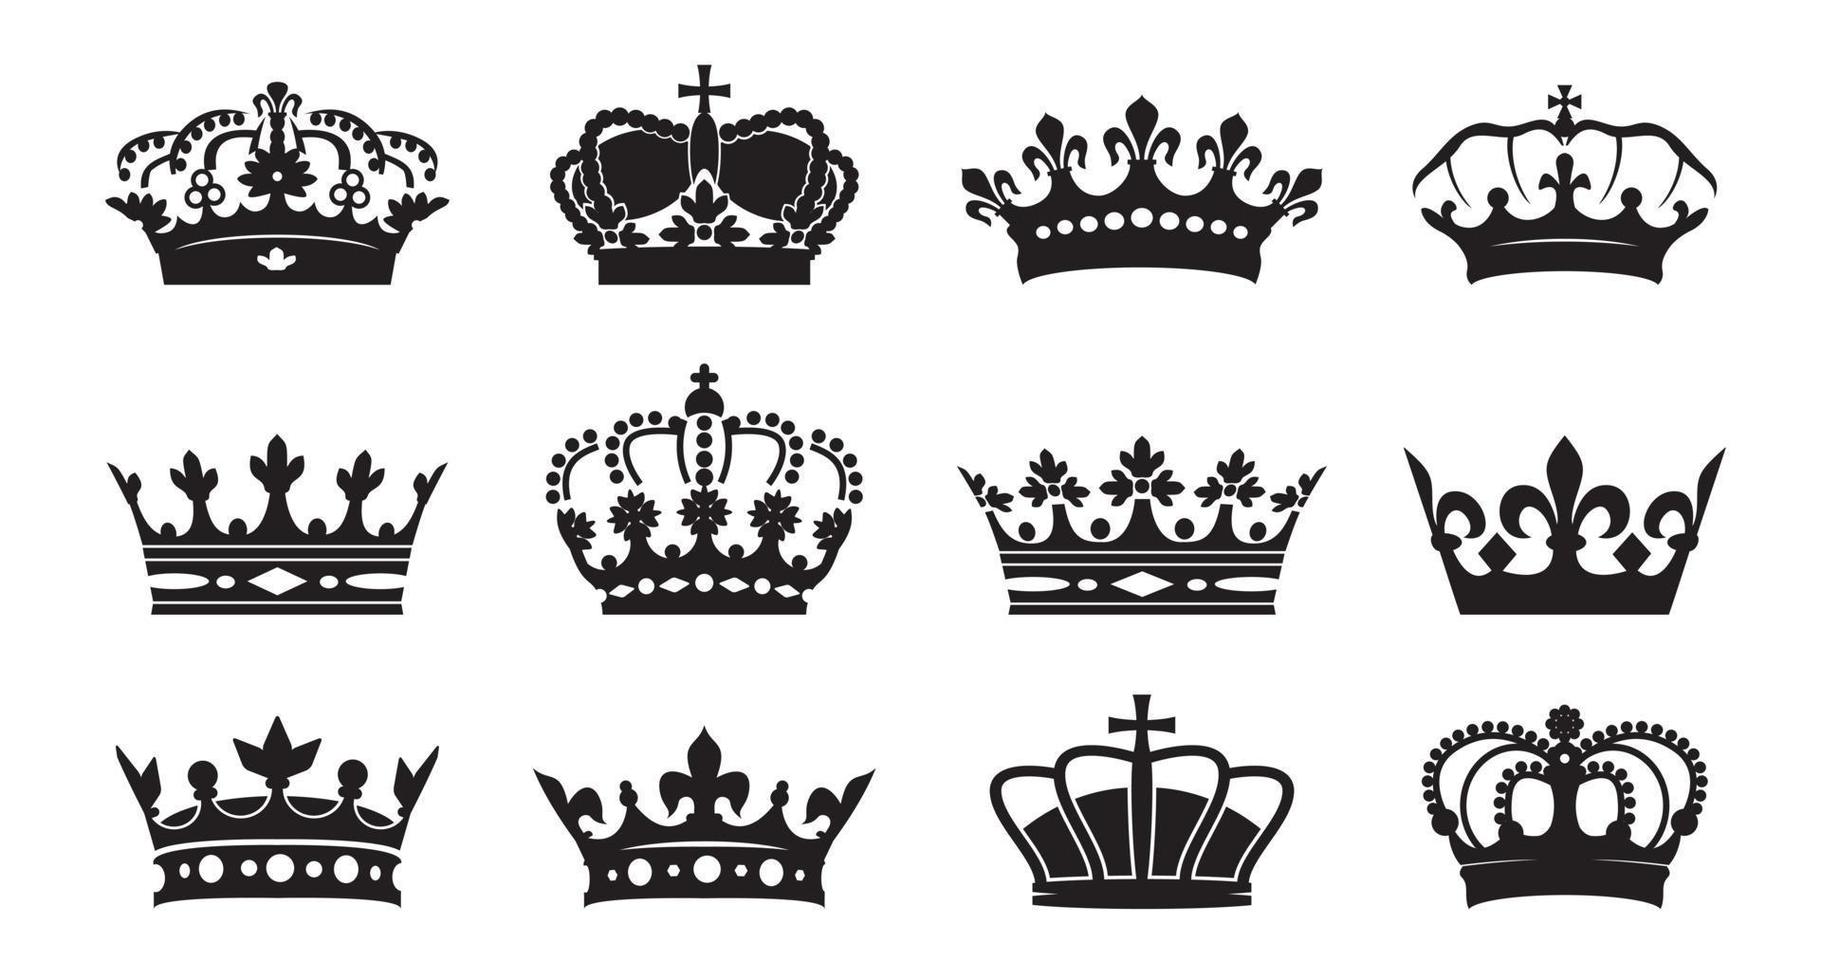 définir l'icône vectorielle de couronnes de roi sur fond blanc. illustration vectorielle. emblème et symboles royaux. vecteur